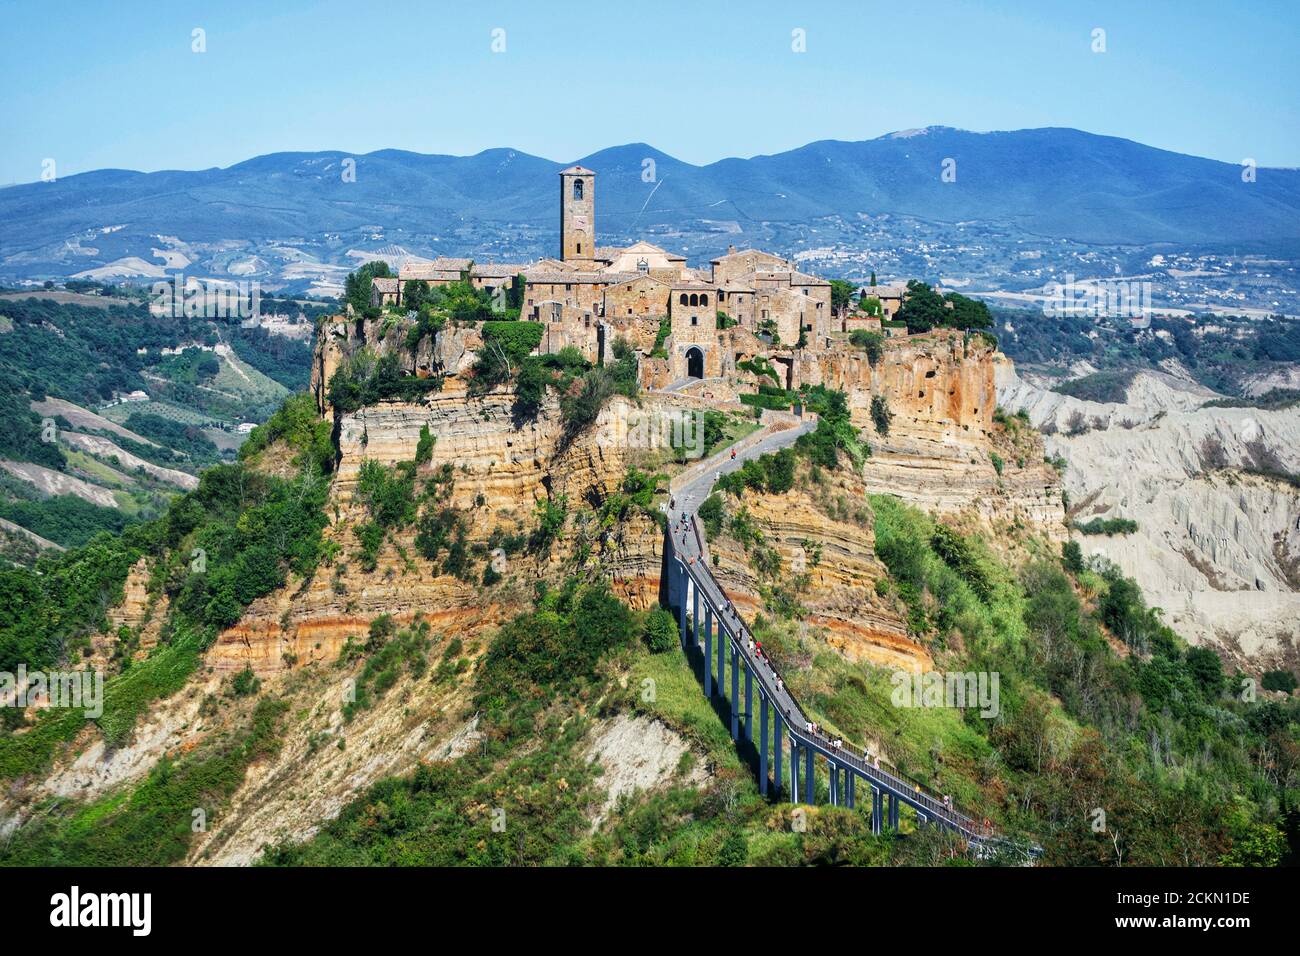 Vista panorámica de la ciudad etrusca de Civita di Bagnoregio y las montañas circundantes, lazio, italia Foto de stock